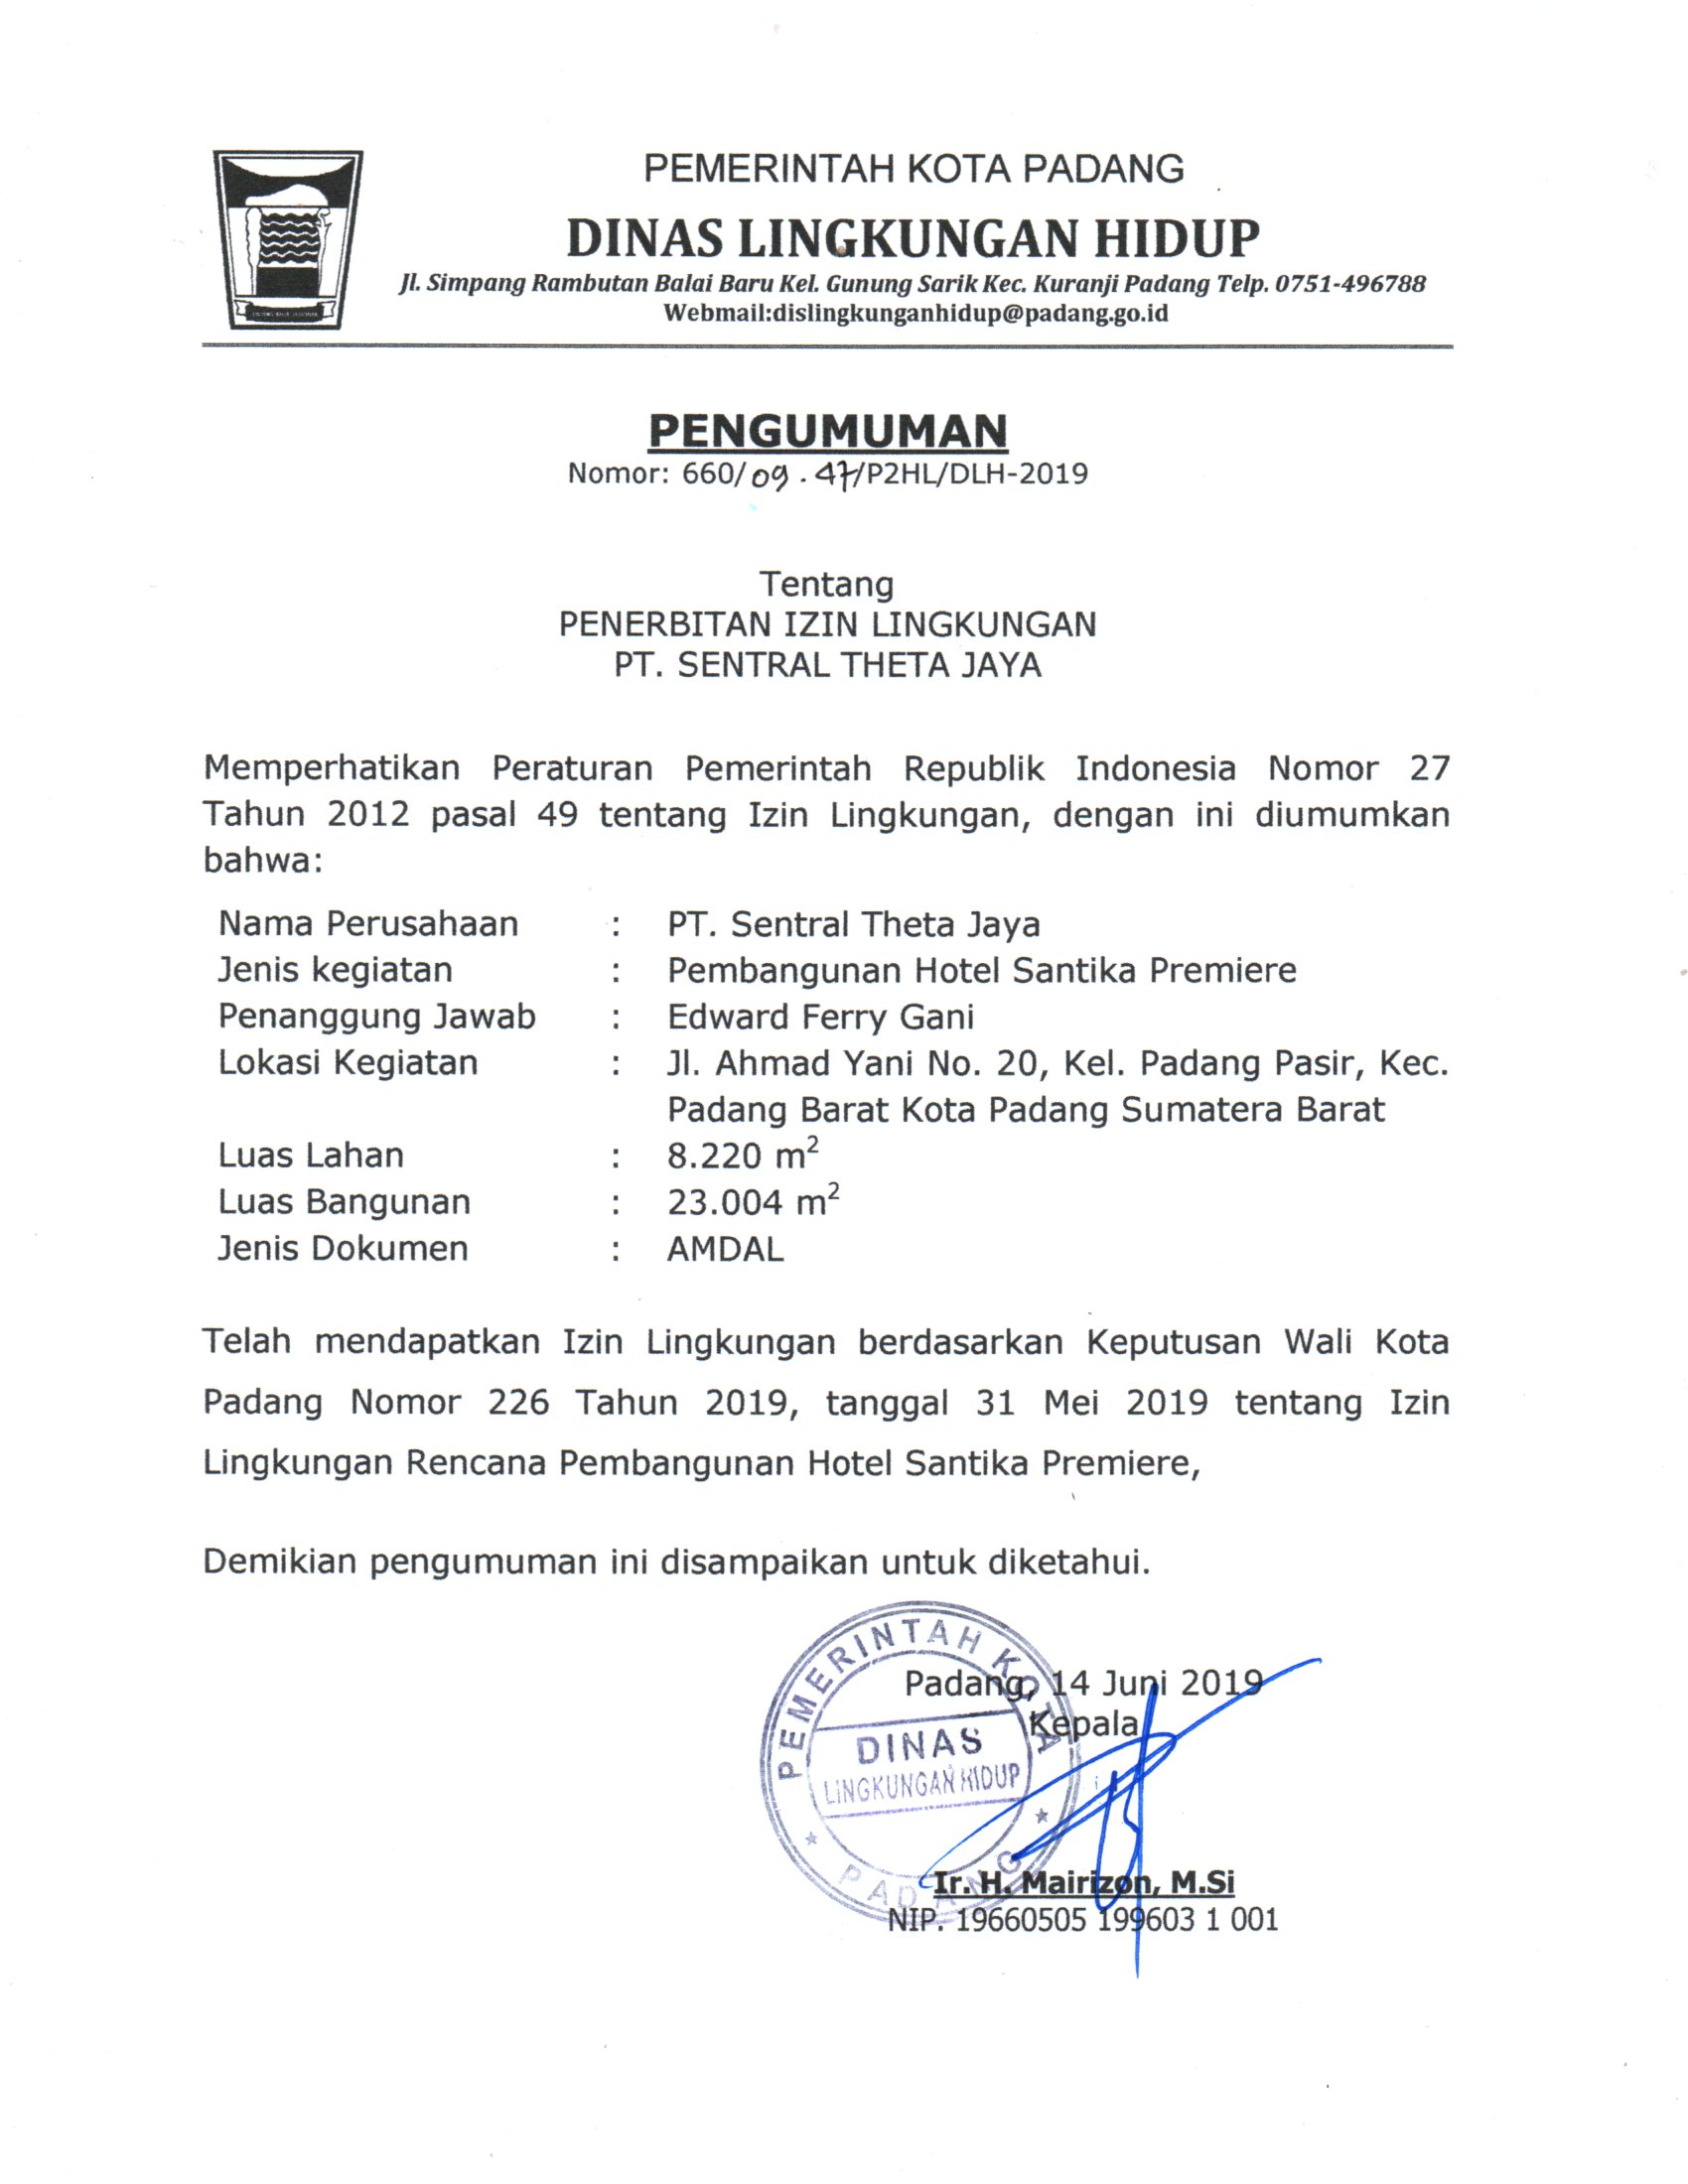 Pengumuman Penerbitan Izin Lingkungan Hotel Santika Premiere PT. Sentral Theta Jaya  di Jl. Ahmad Yani No. 20, Padang Pasir Padang Barat